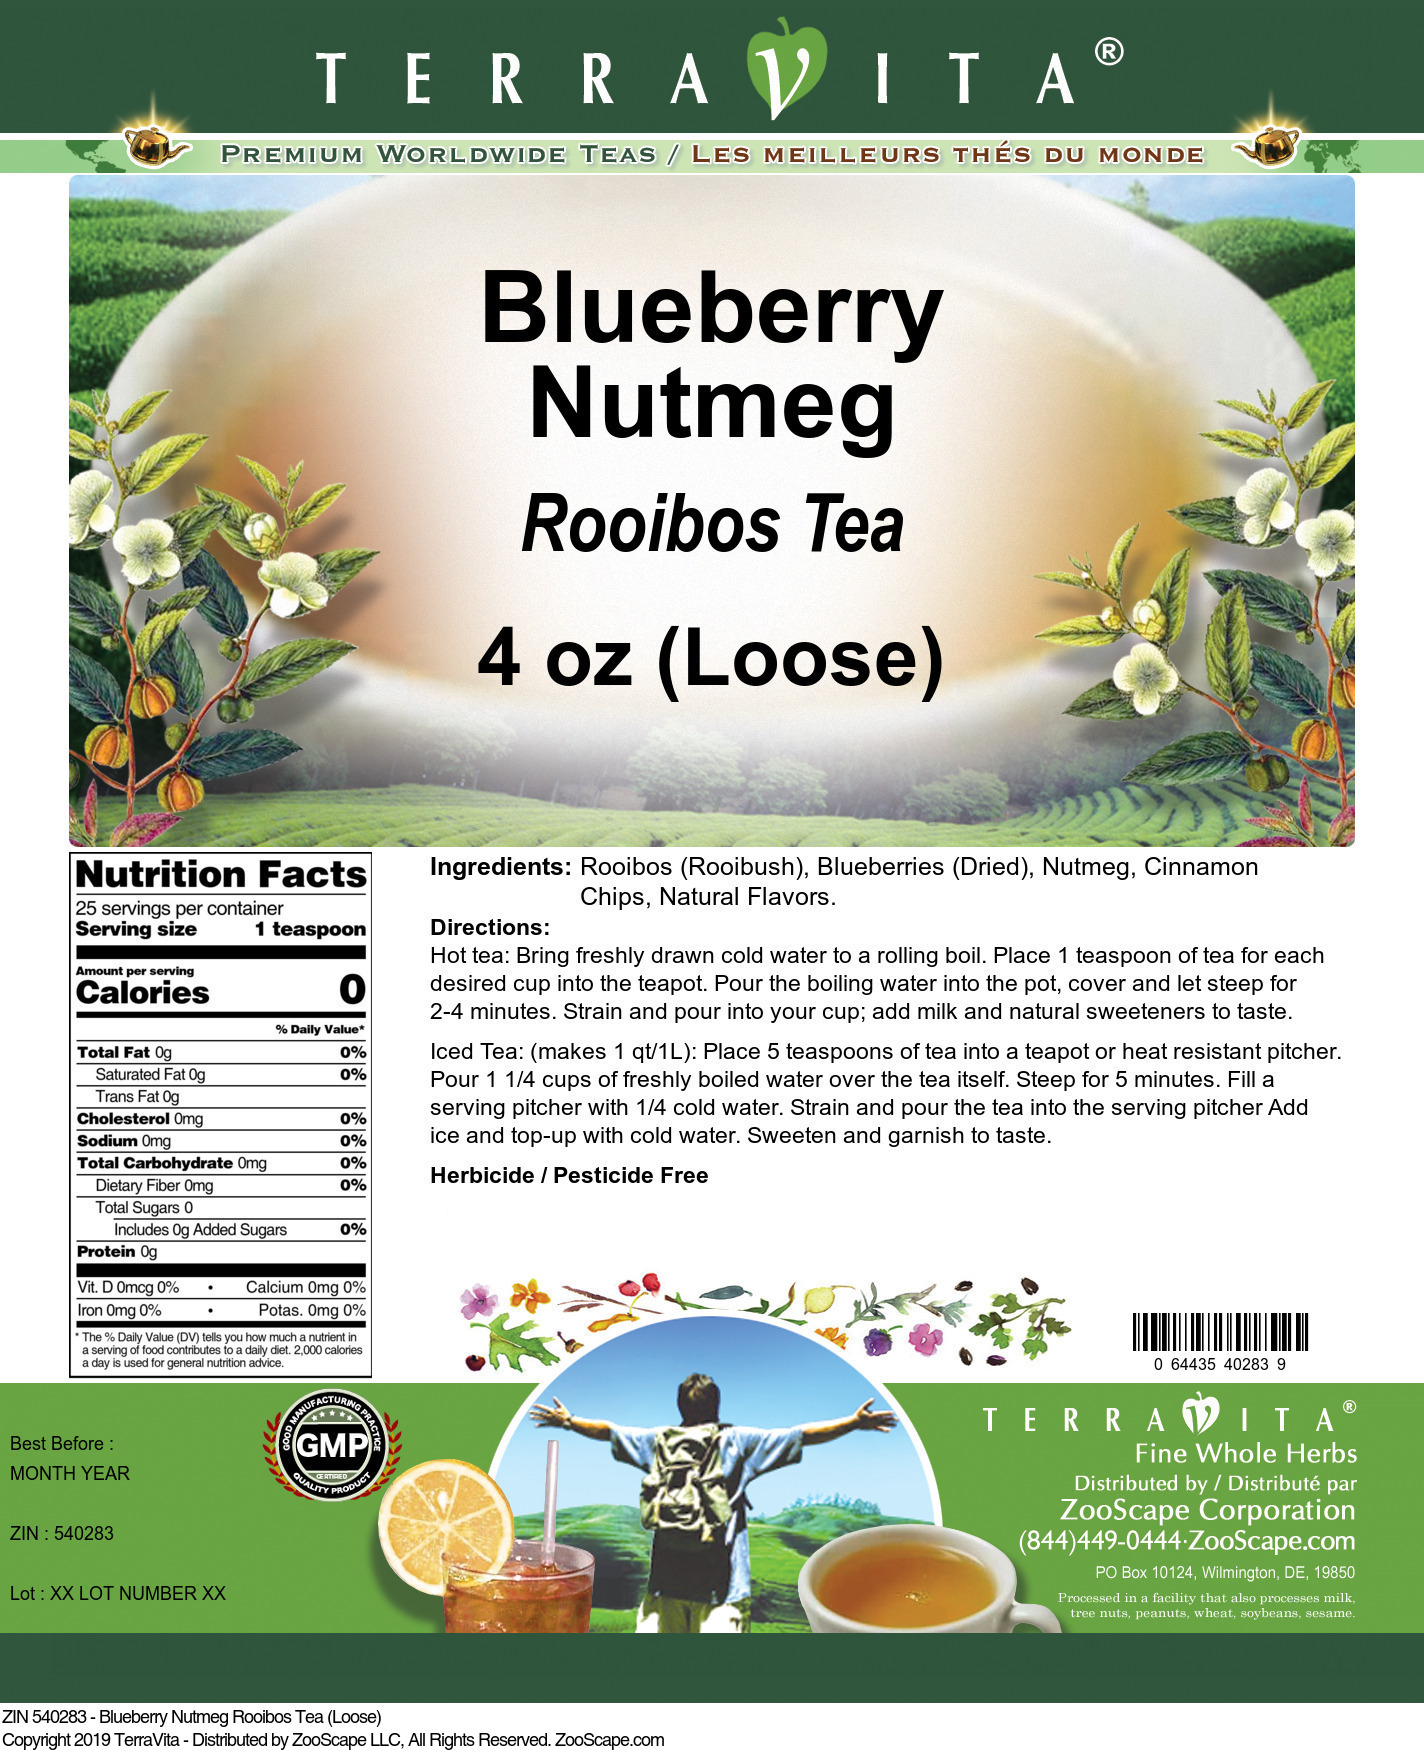 Blueberry Nutmeg Rooibos Tea (Loose) - Label